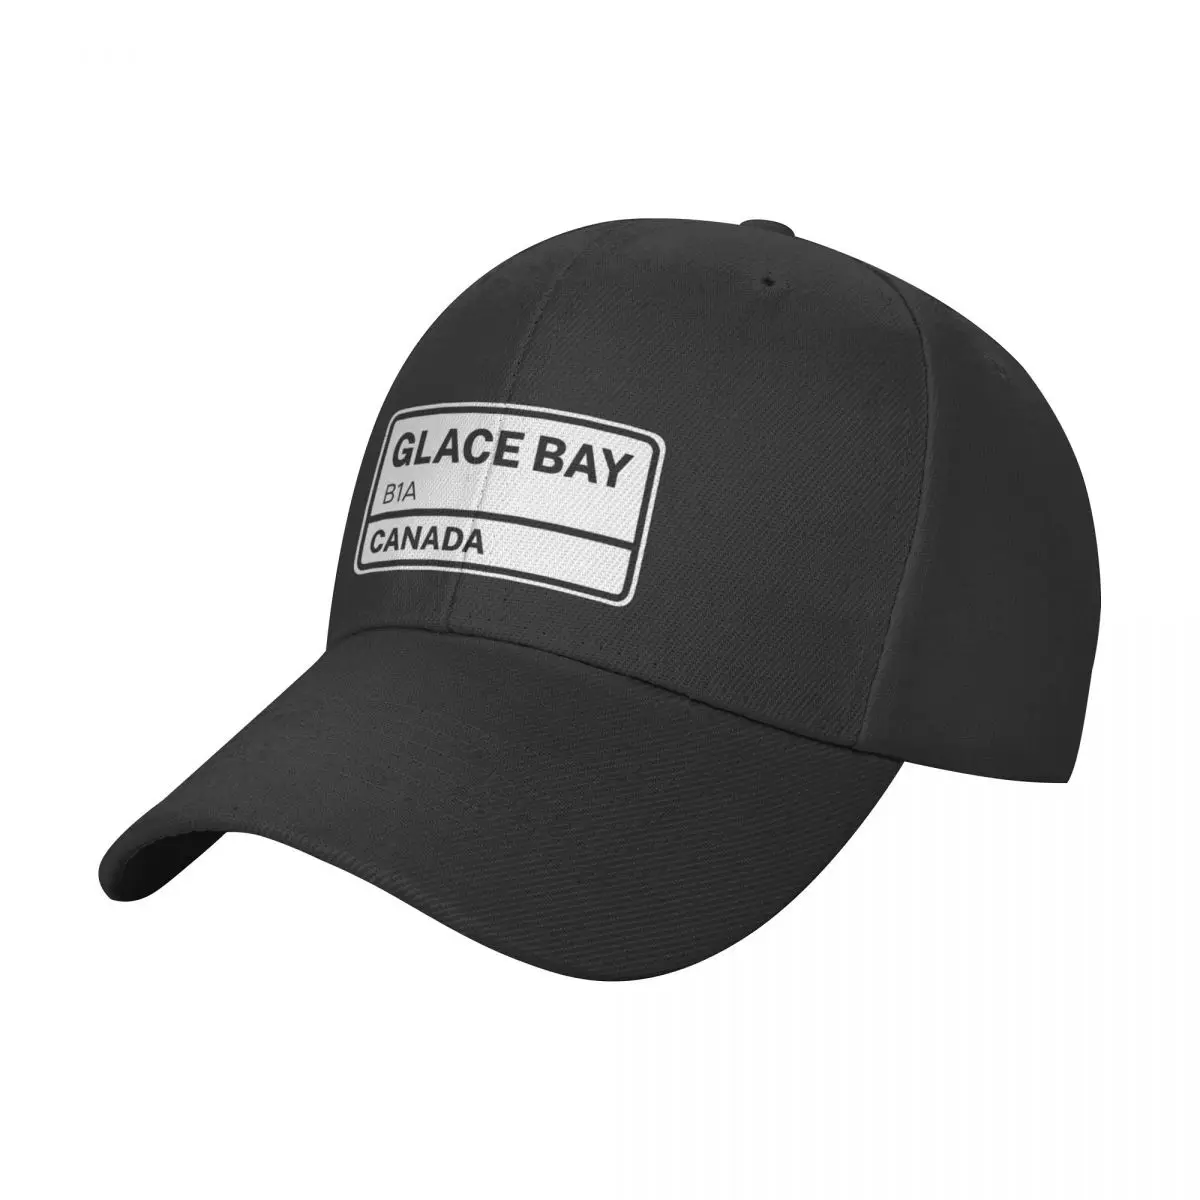 Glace Bay B1A Zip CodeCap Бейсболка с защитой от ультрафиолета солнечная шляпа джентльменская шляпа Мужская кепка Женская